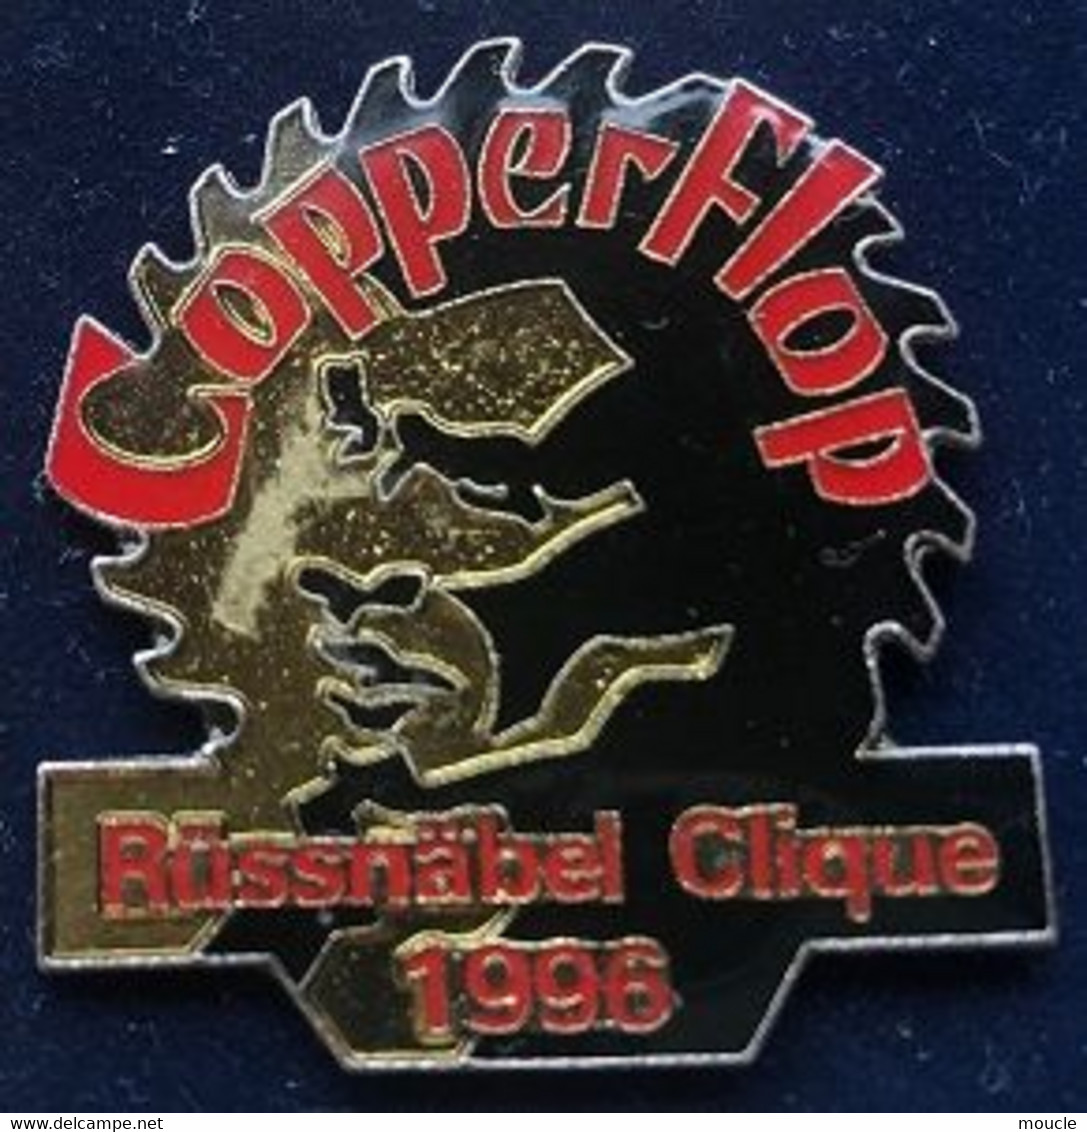 COPPERFLOP - RÜSSNÄBEL CLIQUE 1996 - FOND NOIR - ROUGE - DAVID COPPERFIELD - MAGICIEN - MAGIE - (29) - Personnes Célèbres